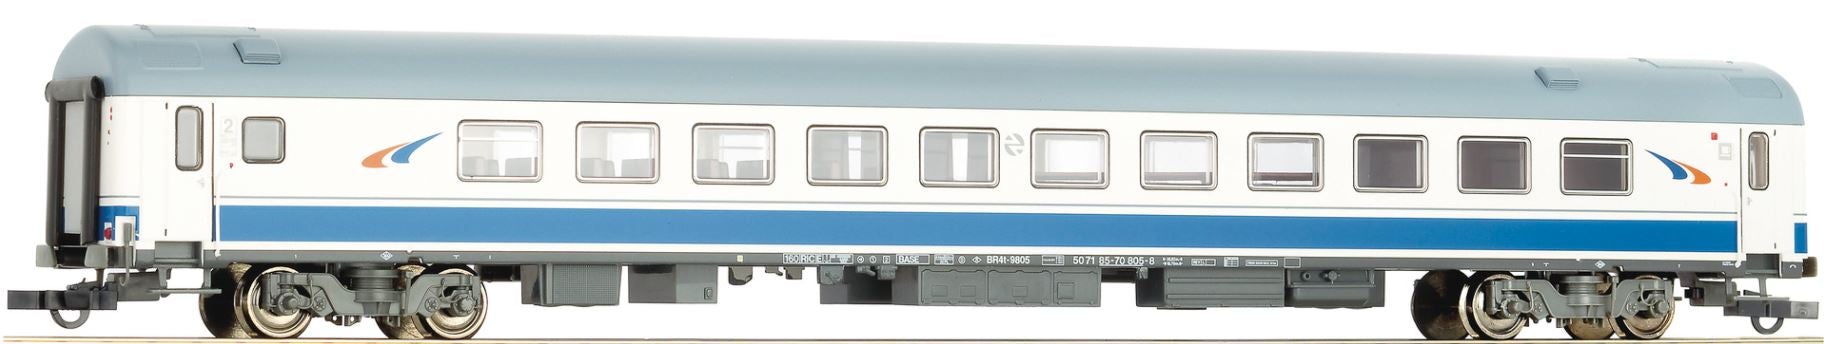 Roco 64597 H0 Passenger Car 1st Class Cafeteria Express Train Car 9800‚RENFE, Ep V